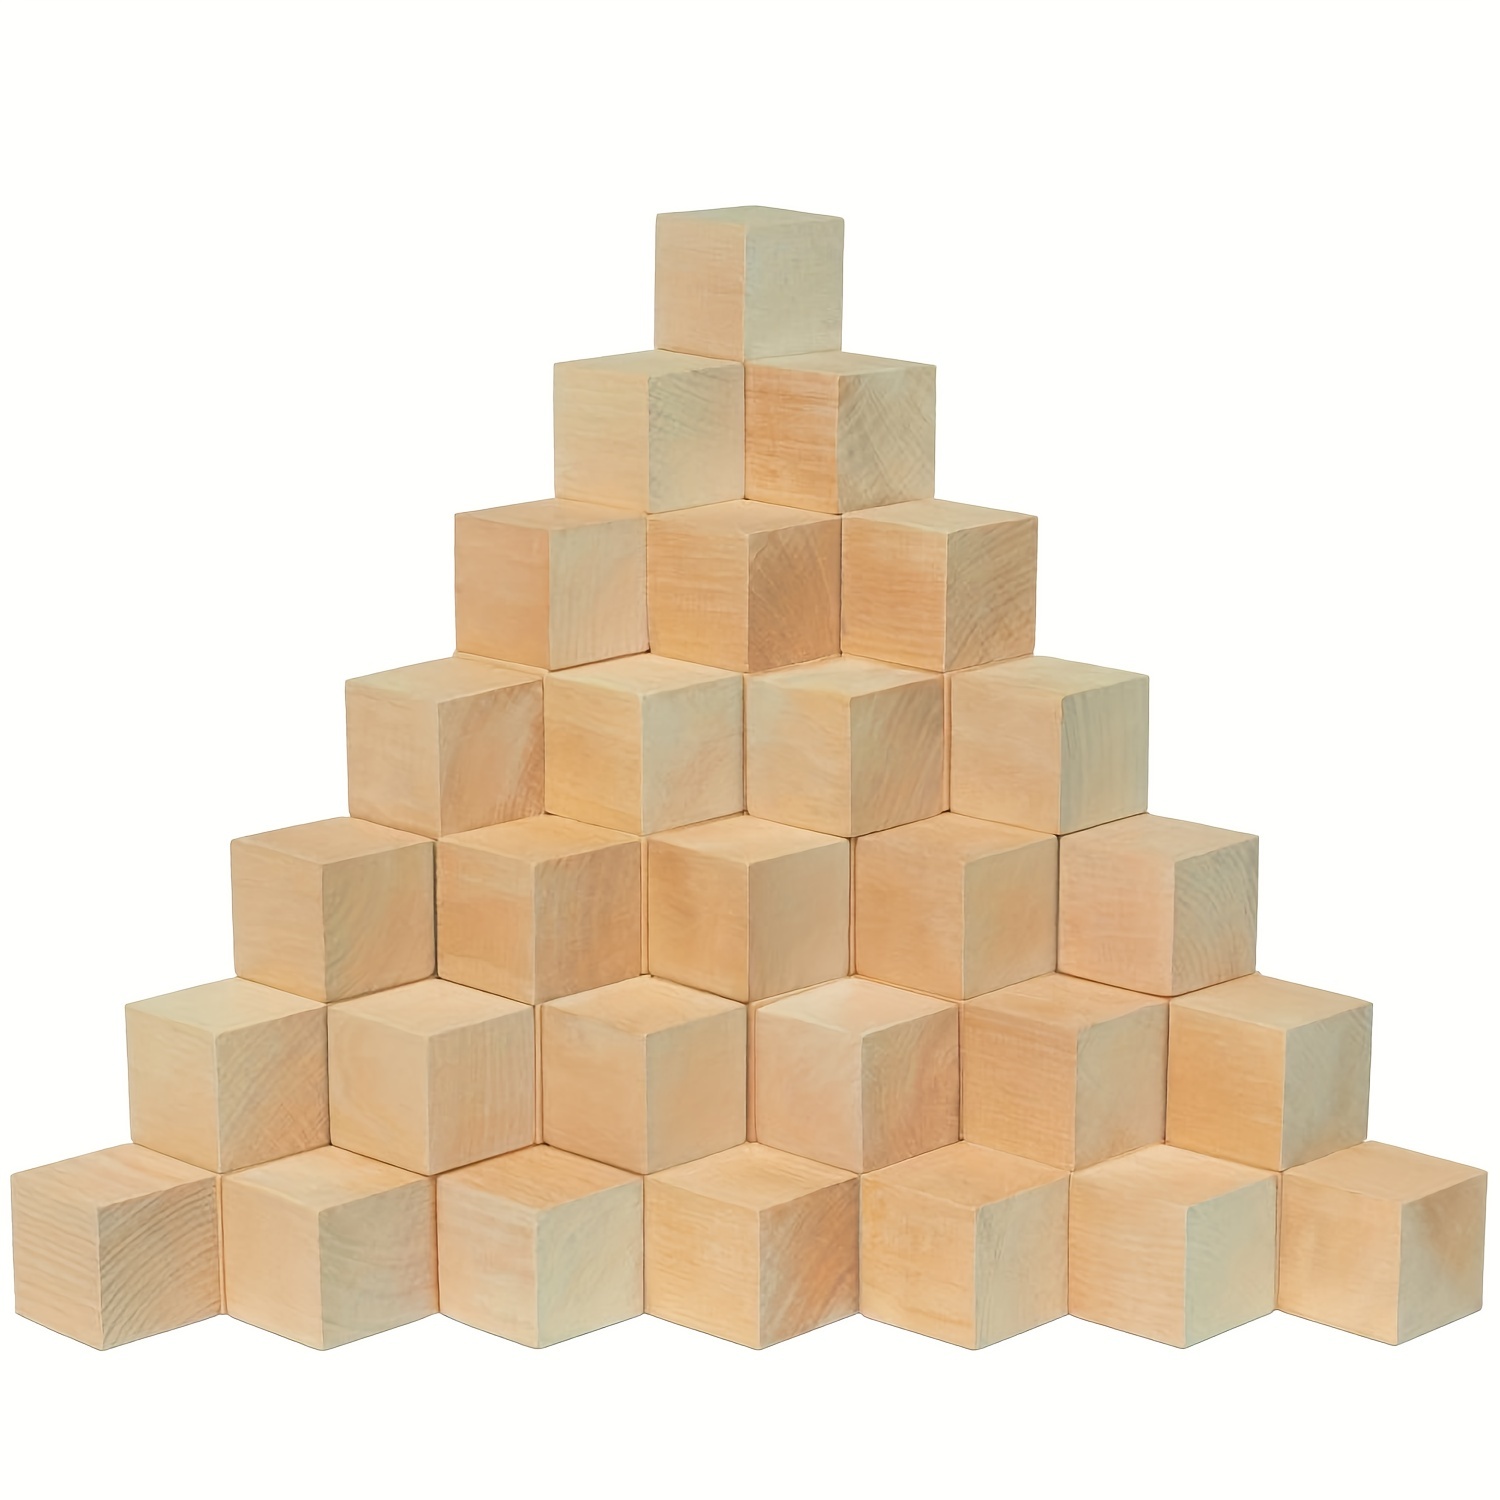  MotBach 100 cubos de madera de 1 pulgada, cubos de pino sin  terminar, bloques de madera maciza, bloques cuadrados de madera en blanco  para manualidades y proyectos de bricolaje, fabricación de 